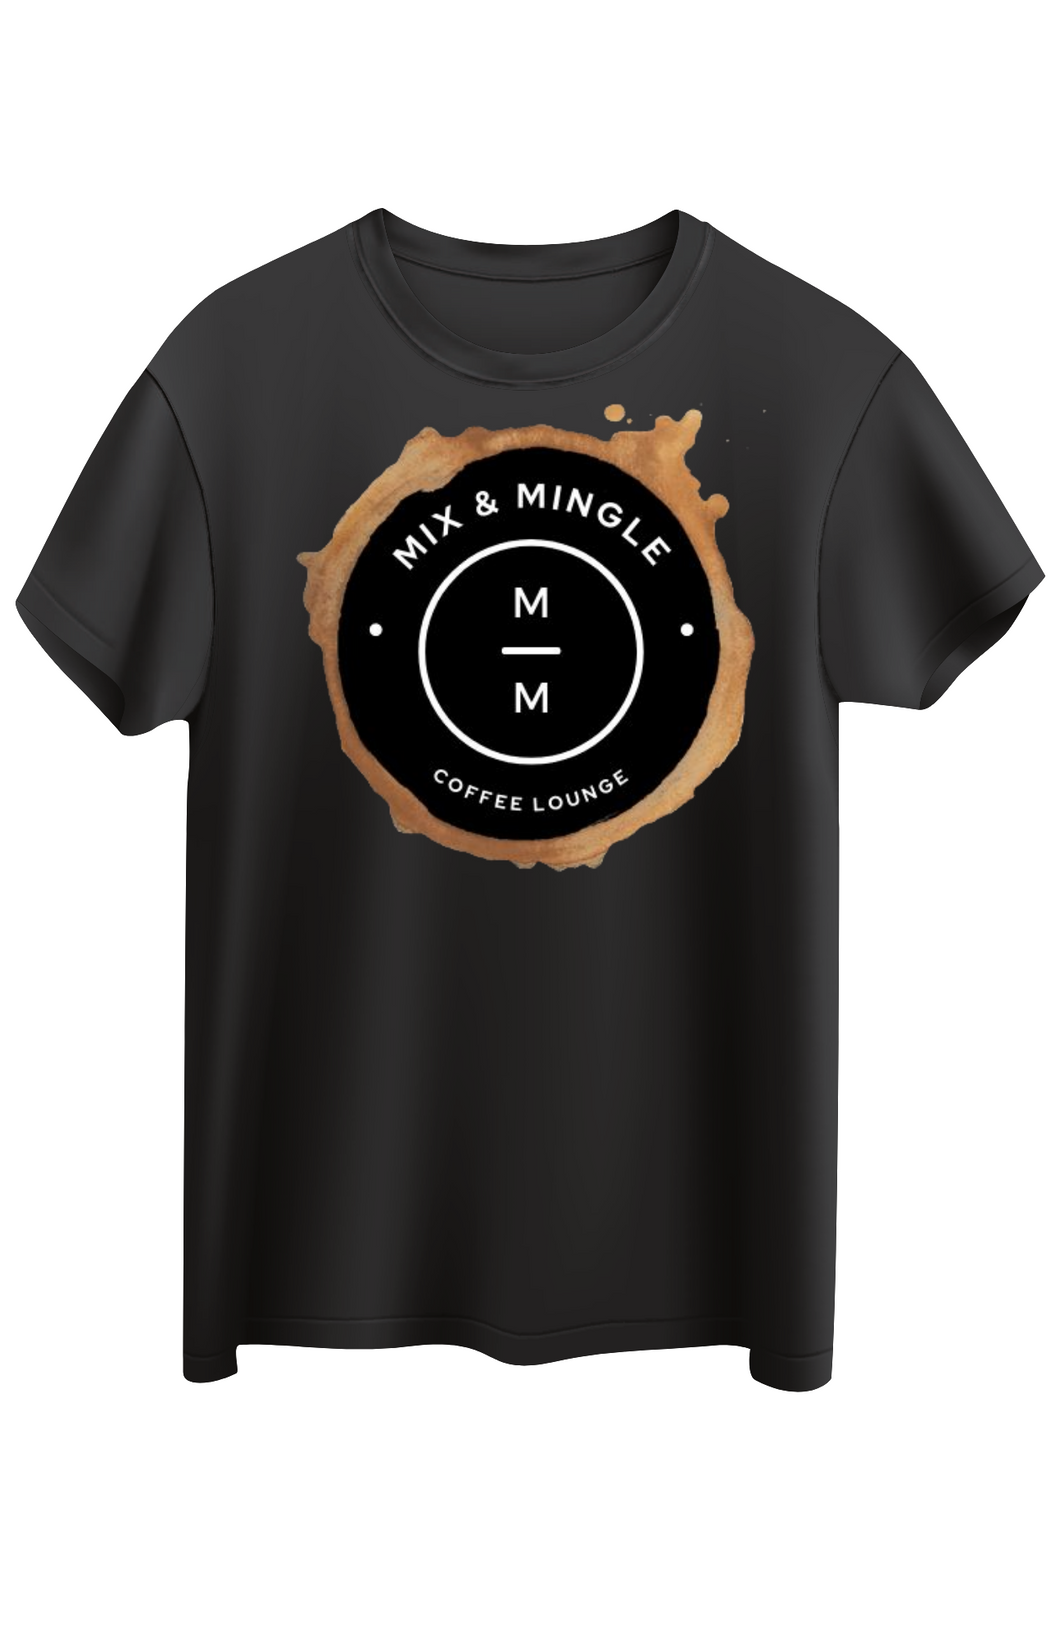 Mix + Mingle Coffee Lounge T-Shirt